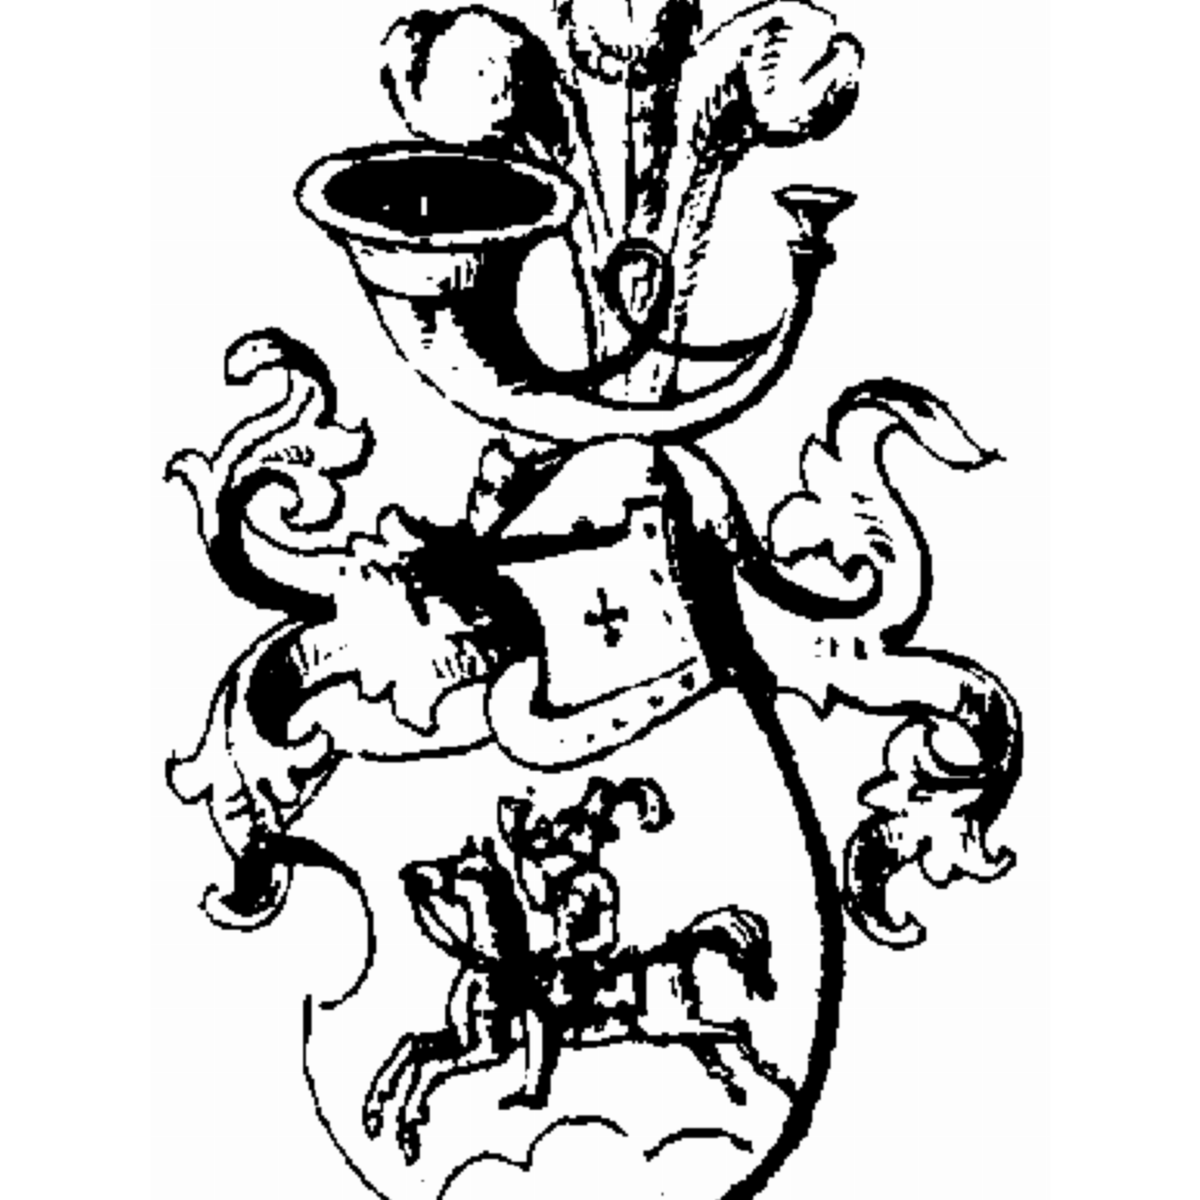 Wappen der Familie Rive